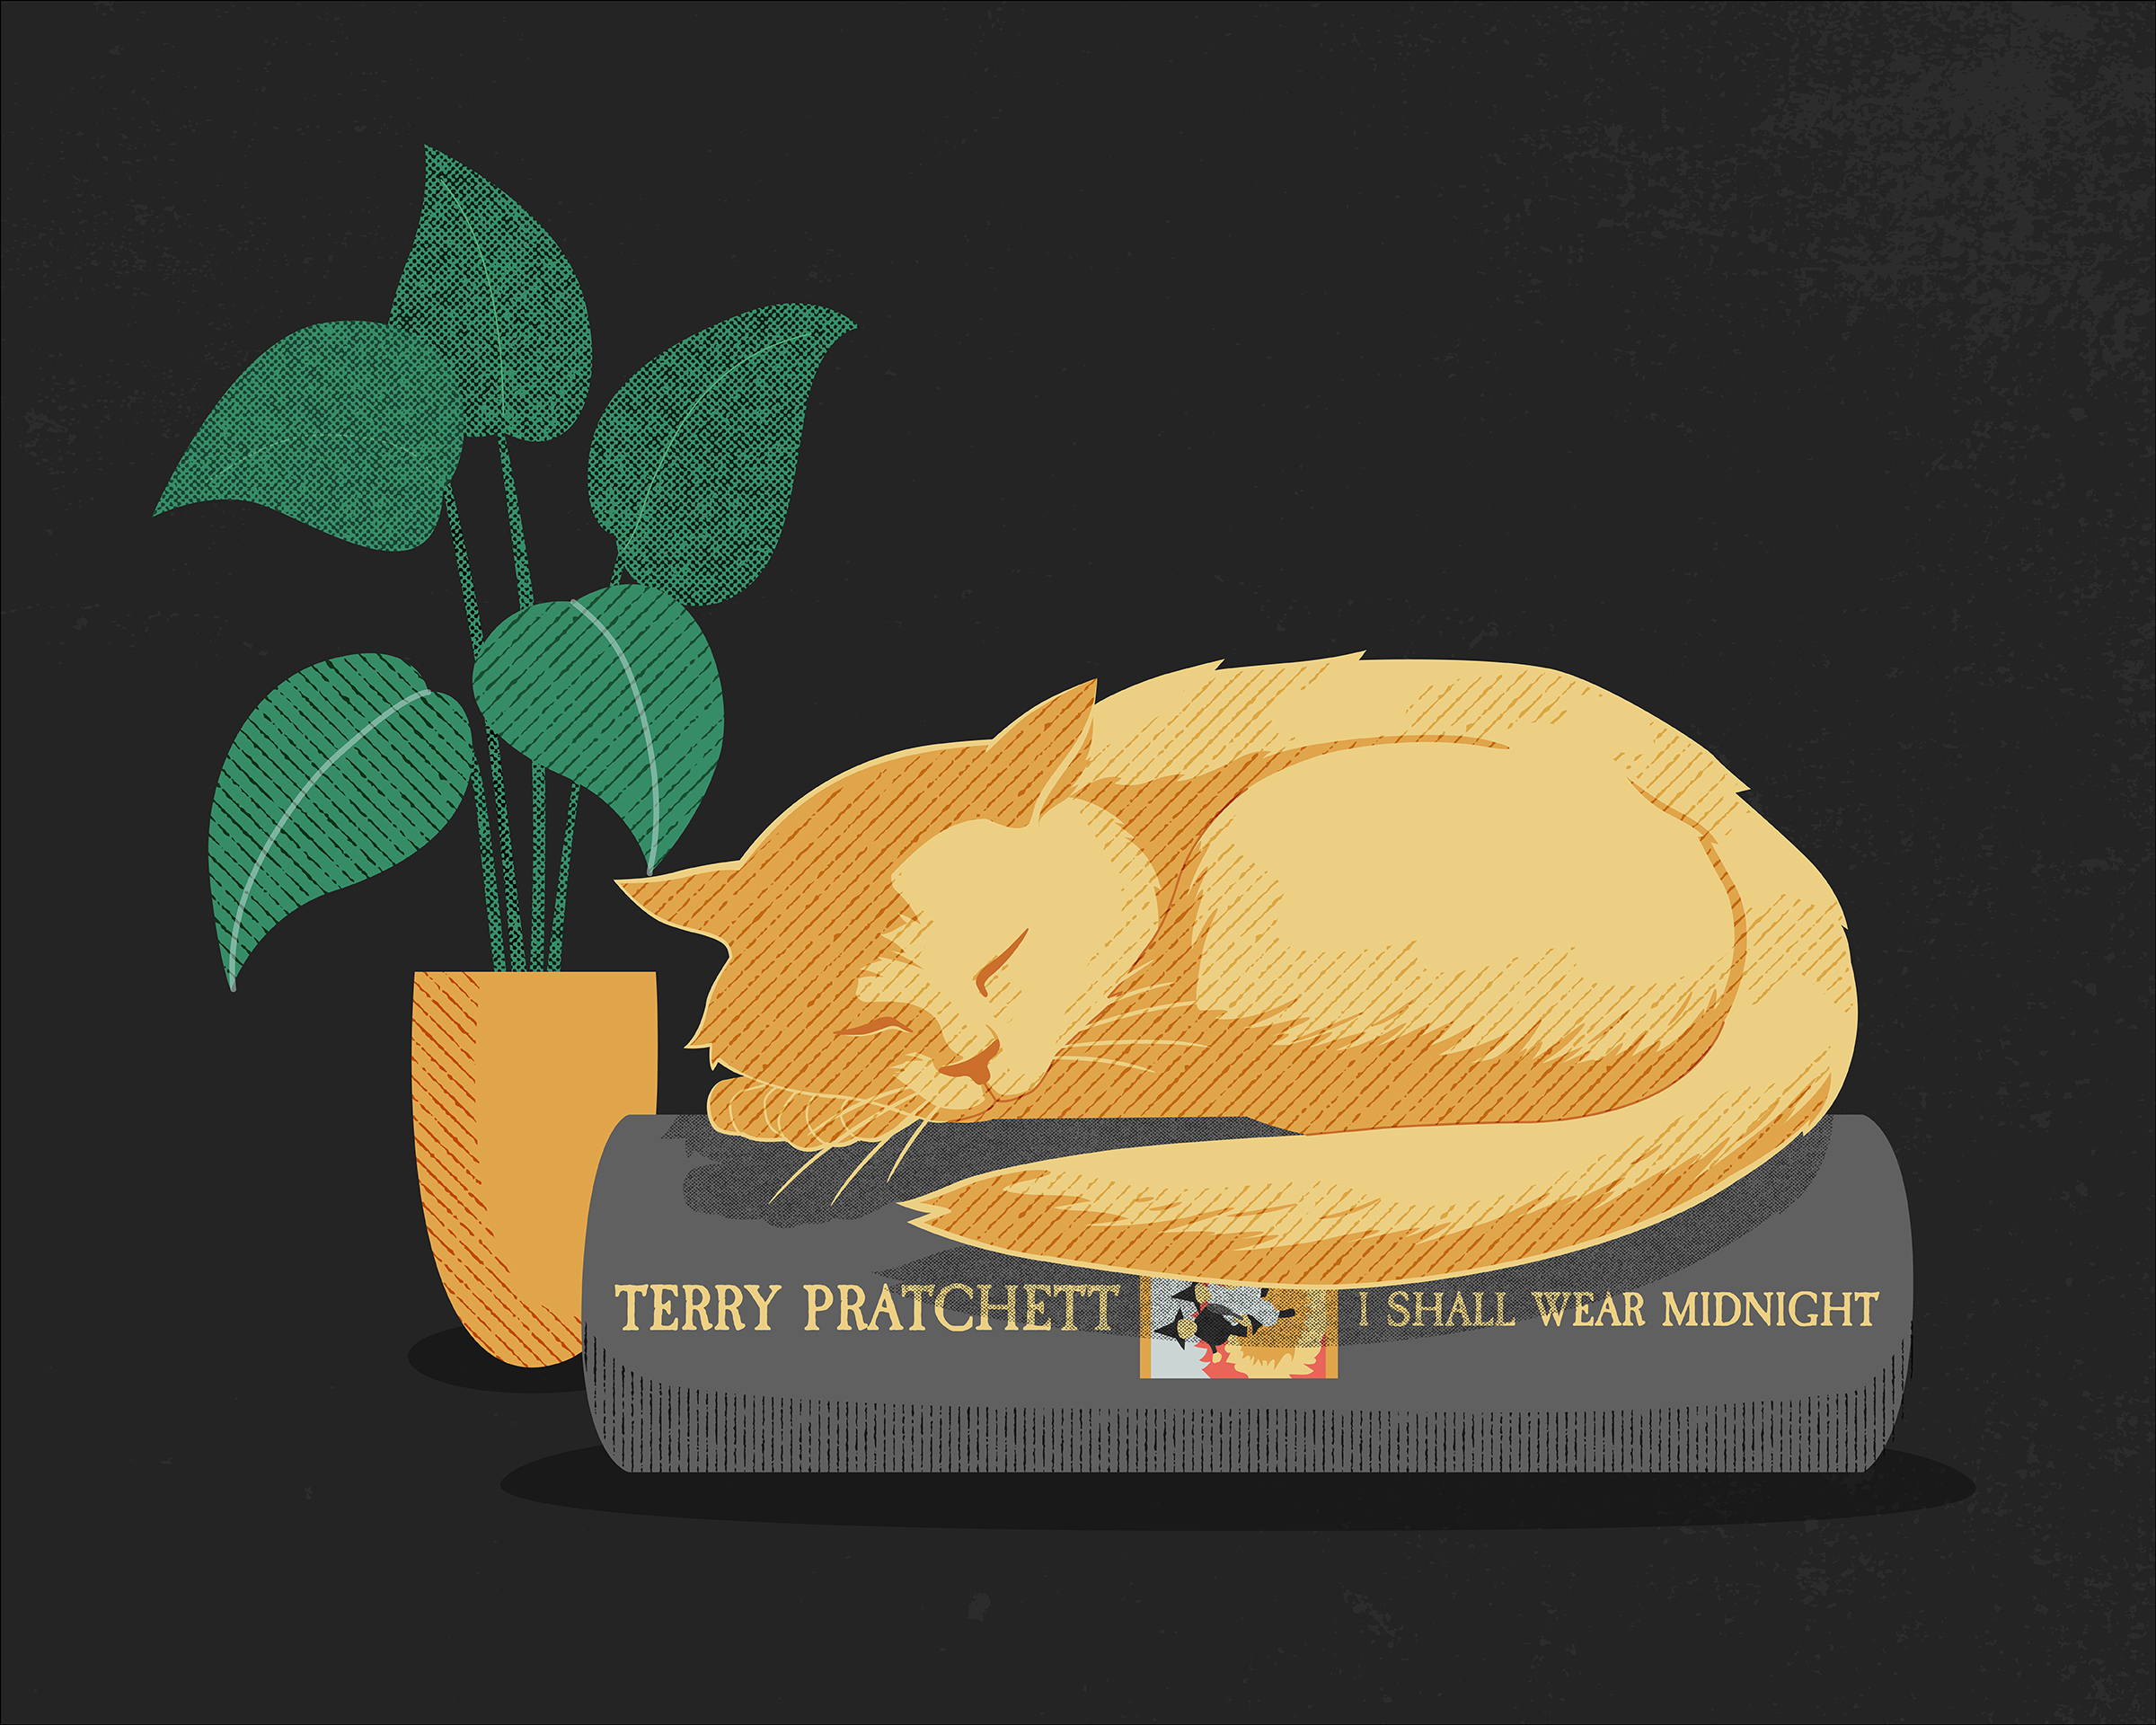 Illustration of a cat sleeping on a Terry Pratchet novel